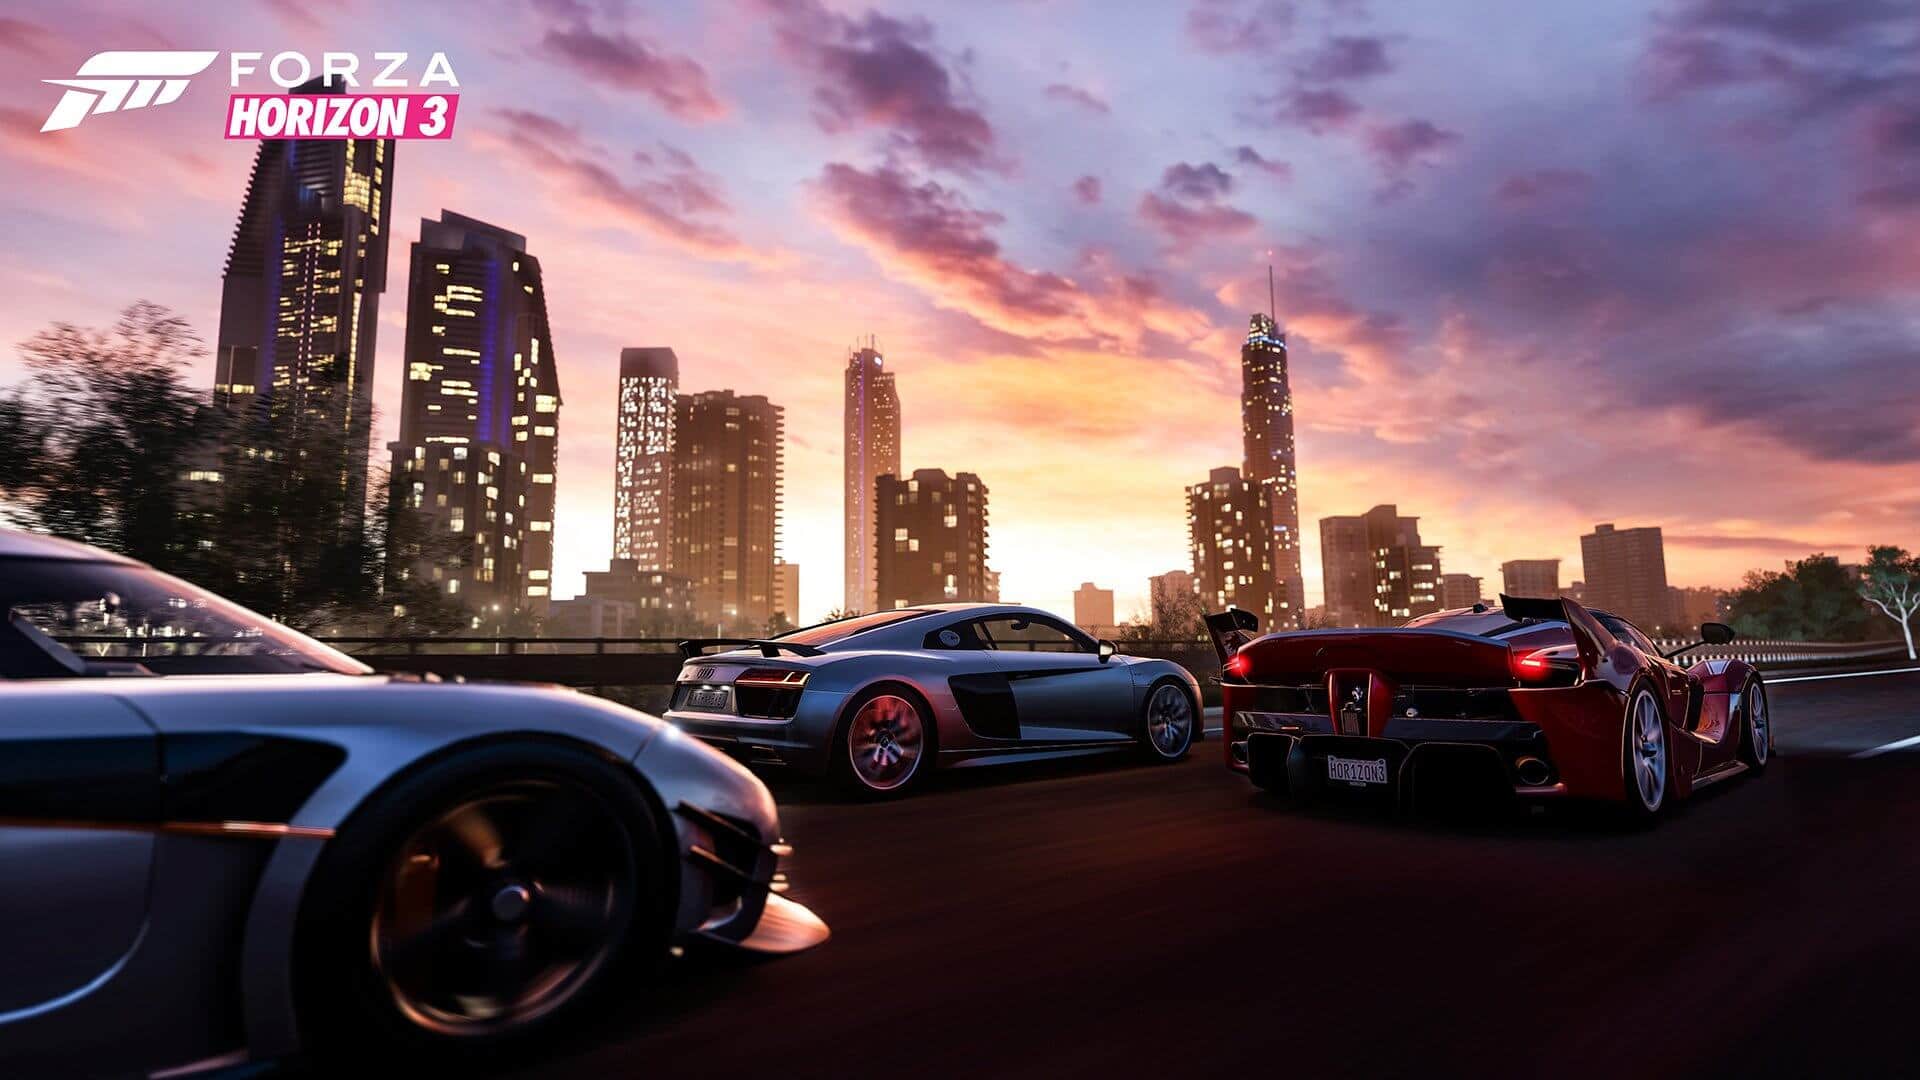 Forza Horizon 3 download free